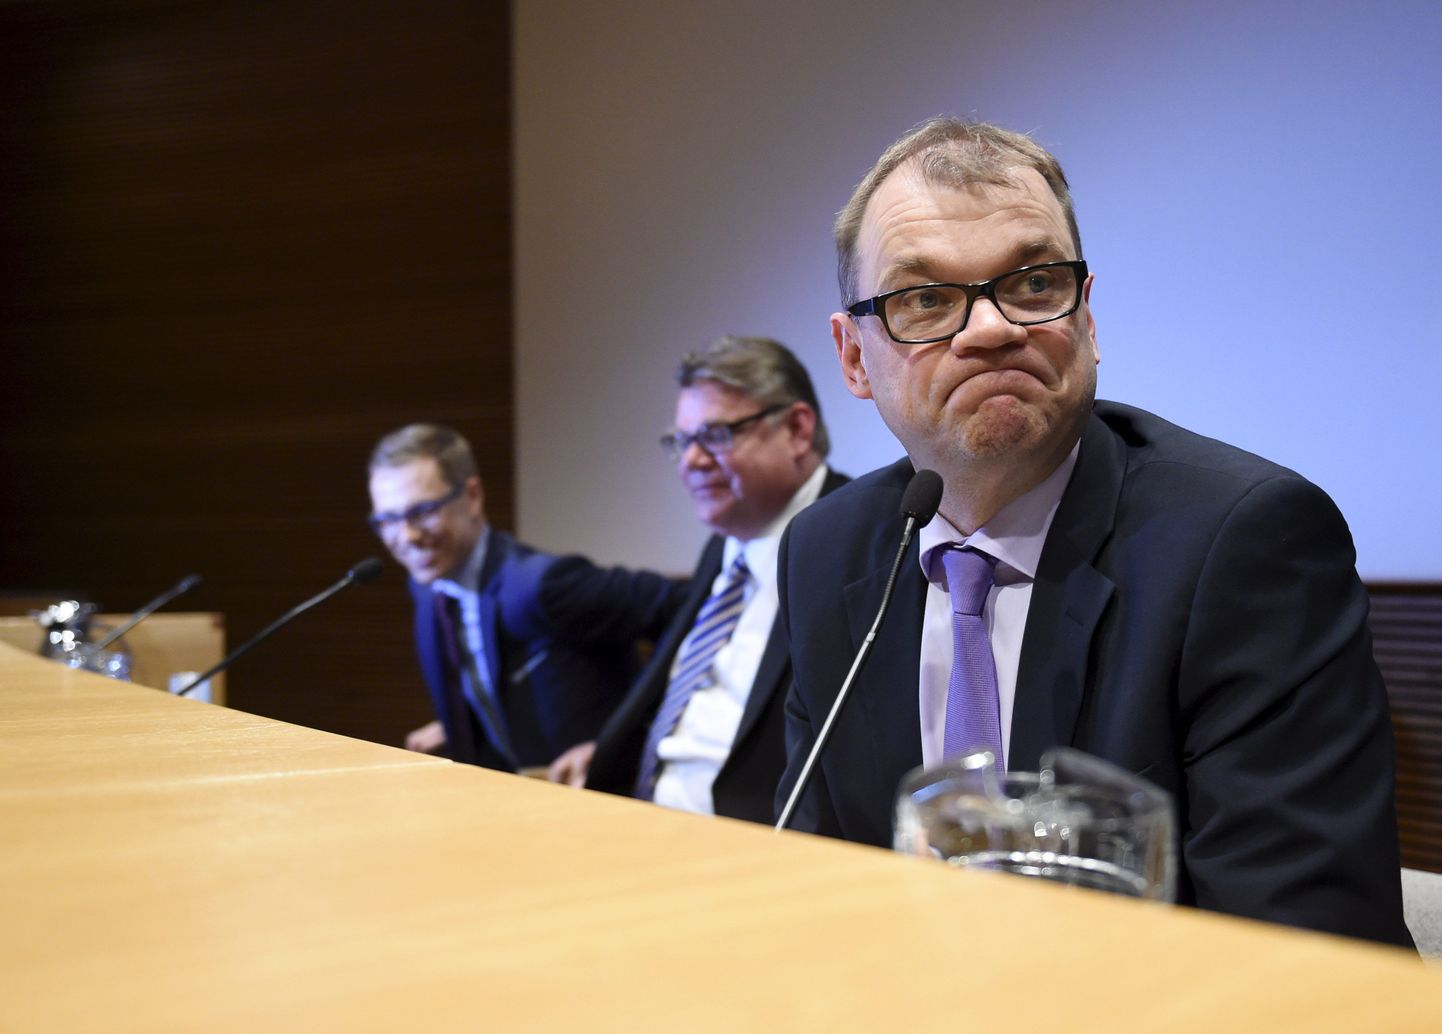 Soome järgmine peaminister, Keskerakonna juht Juha Sipilä (esiplaanil), Põlissoomlaste juht Simo Soini ja Koonderakonna liider Alexander Stubb koalitsiooniläbirääkimiste vahel pressikonverentsil.